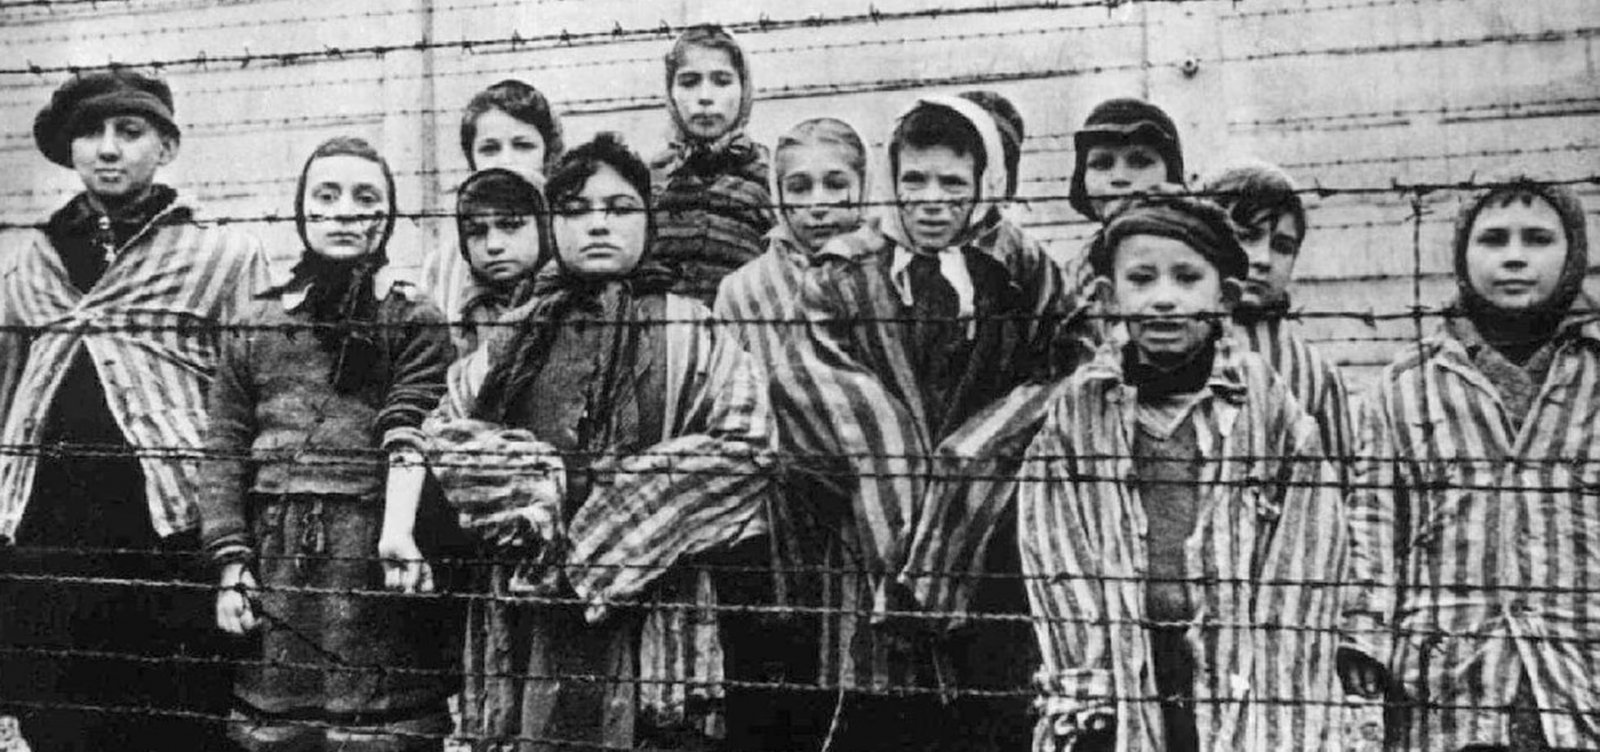 Milhões de razões para jamais esquecer: Dia Memória das Vítimas do Holocausto relembra o horror do genocídio de judeus no nazismo